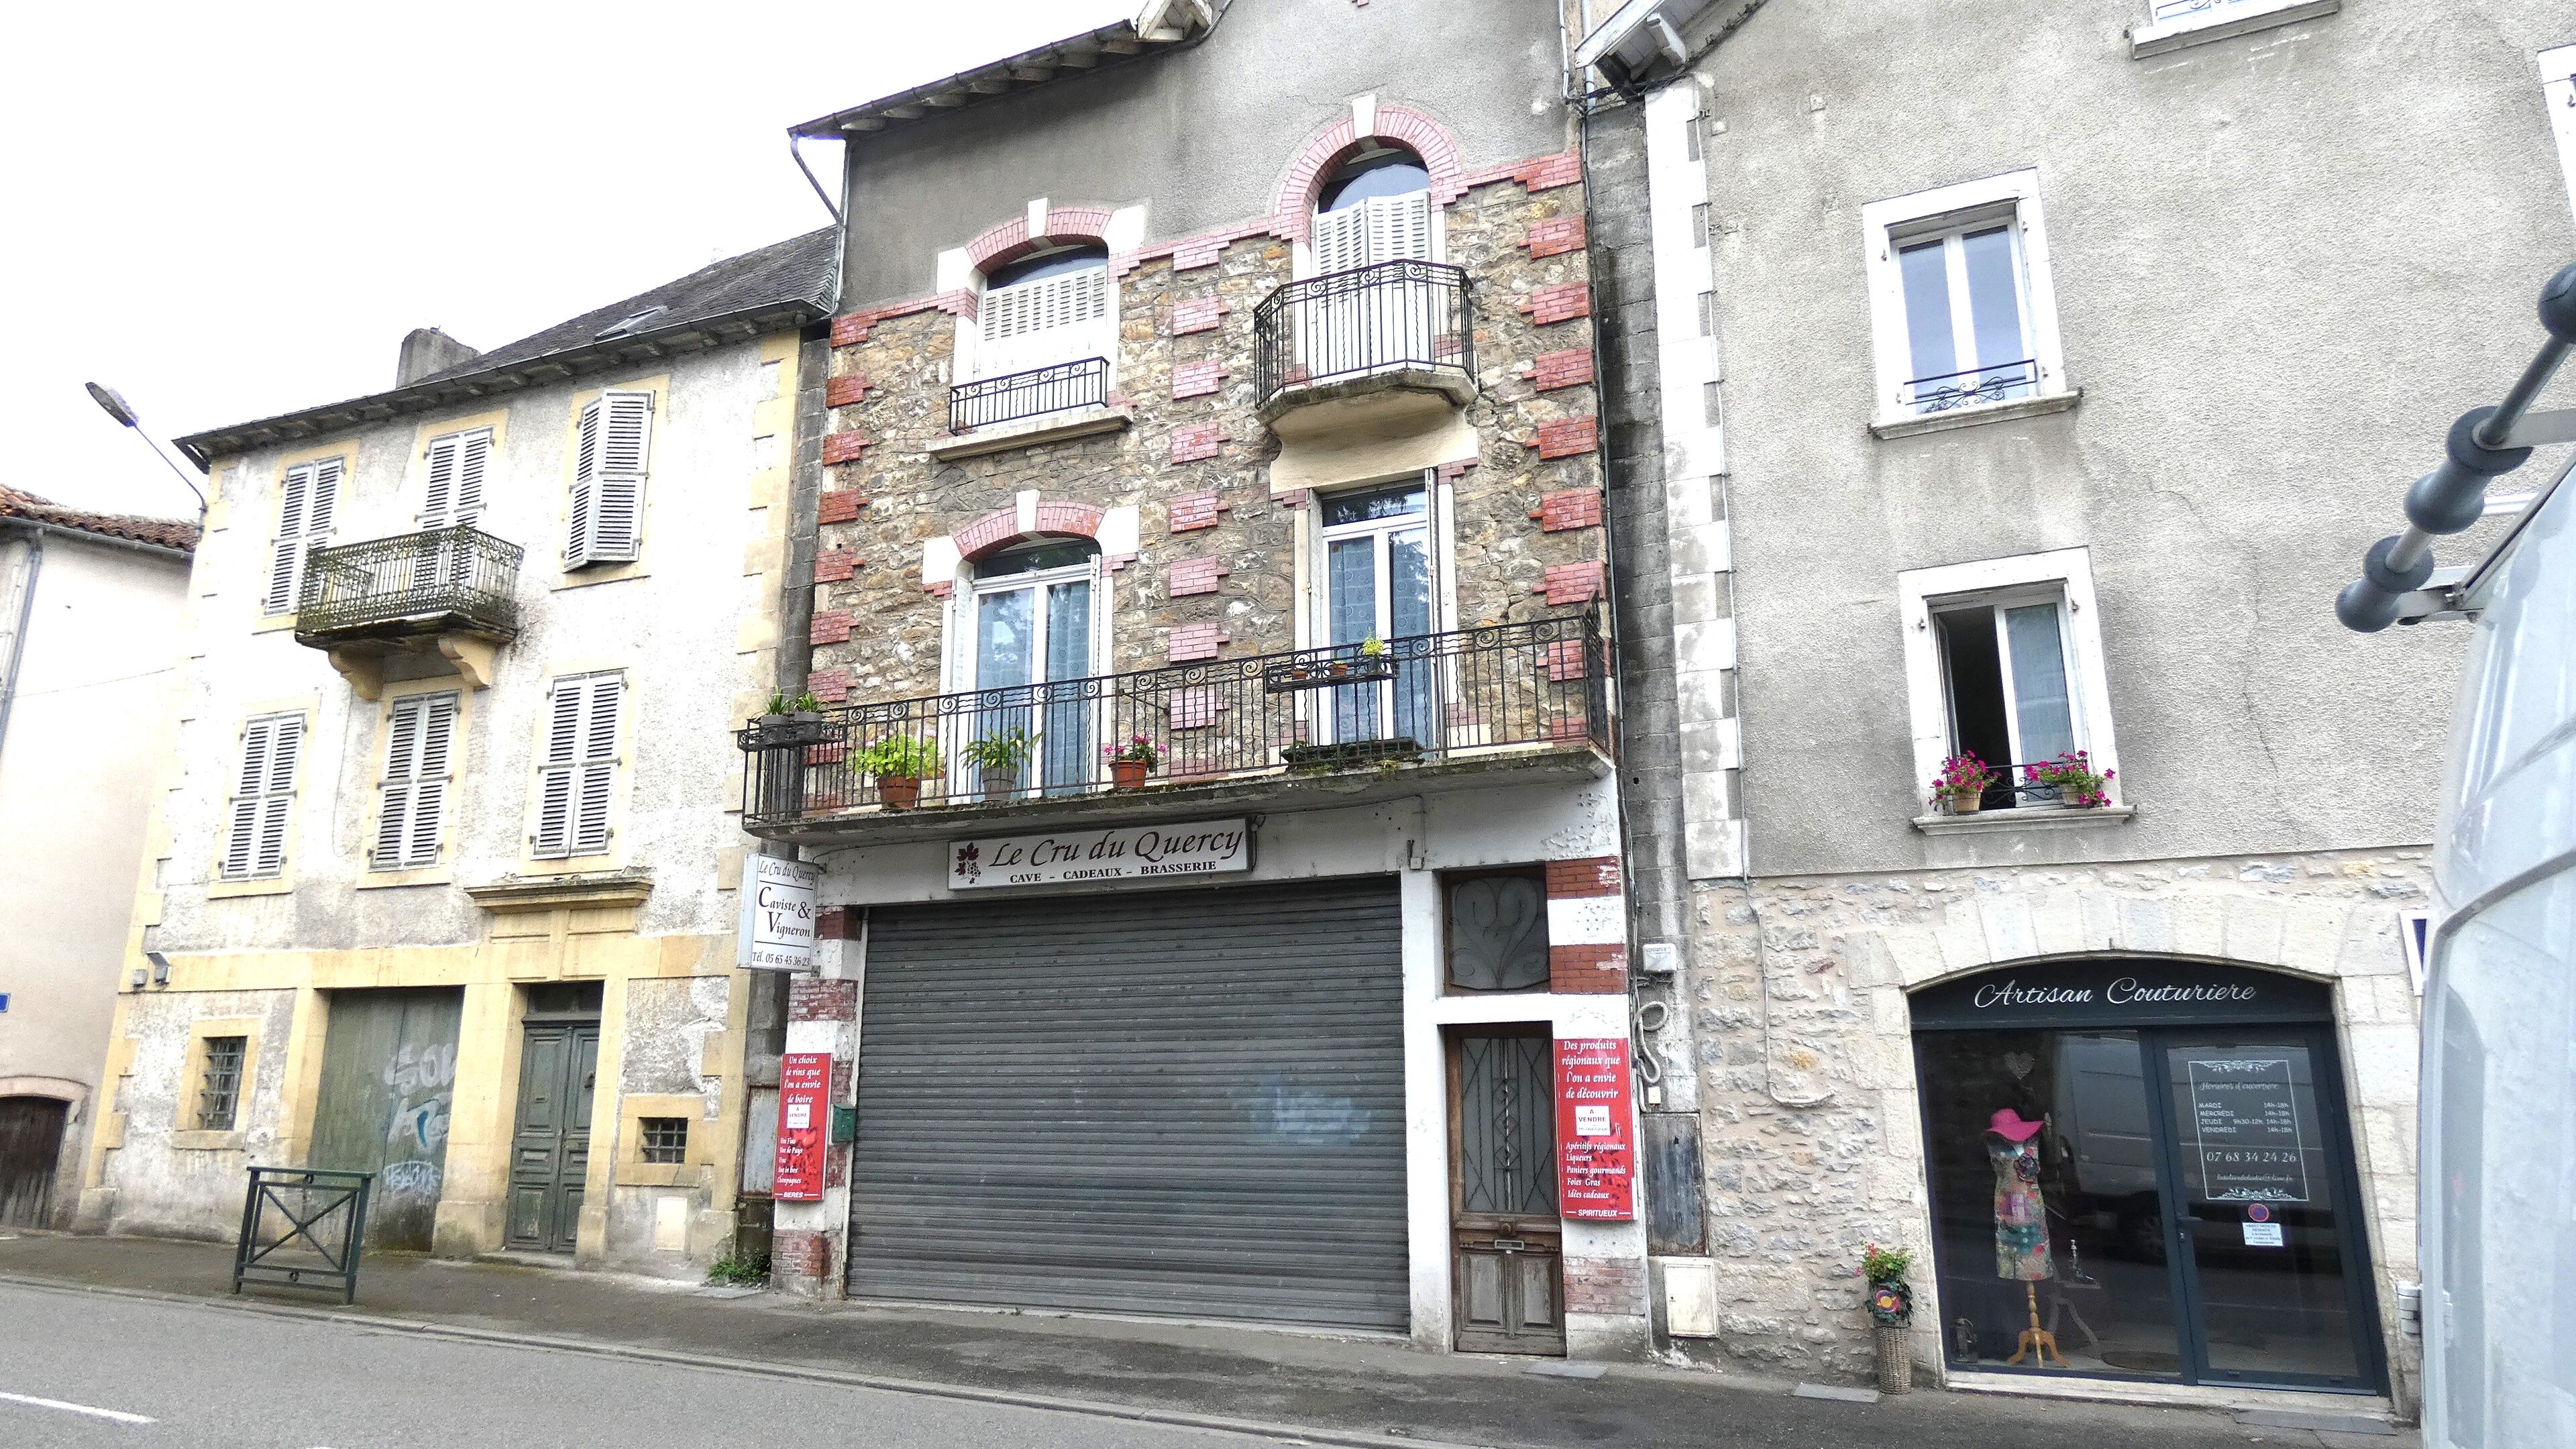 Vente Commerce divers à Villefranche de Rouergue 82 000 €